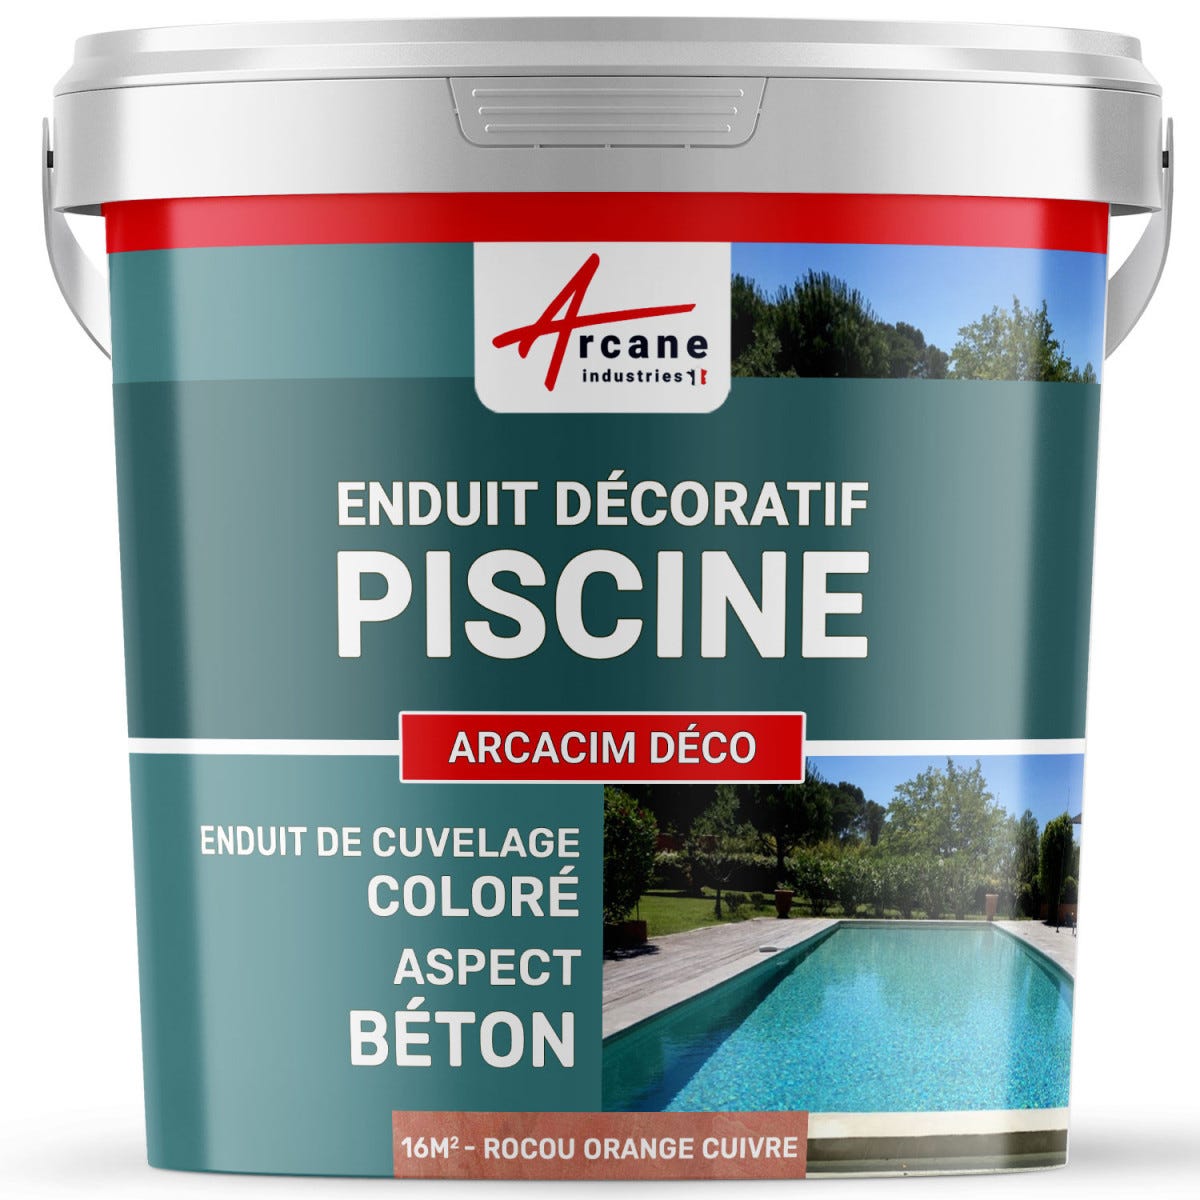 ENDUIT DE CUVELAGE PISCINE FINITION BETON CIRE - ARCACIM DECO - 16 m² - Rocou Orange Cuivre - ARCANE INDUSTRIES 0